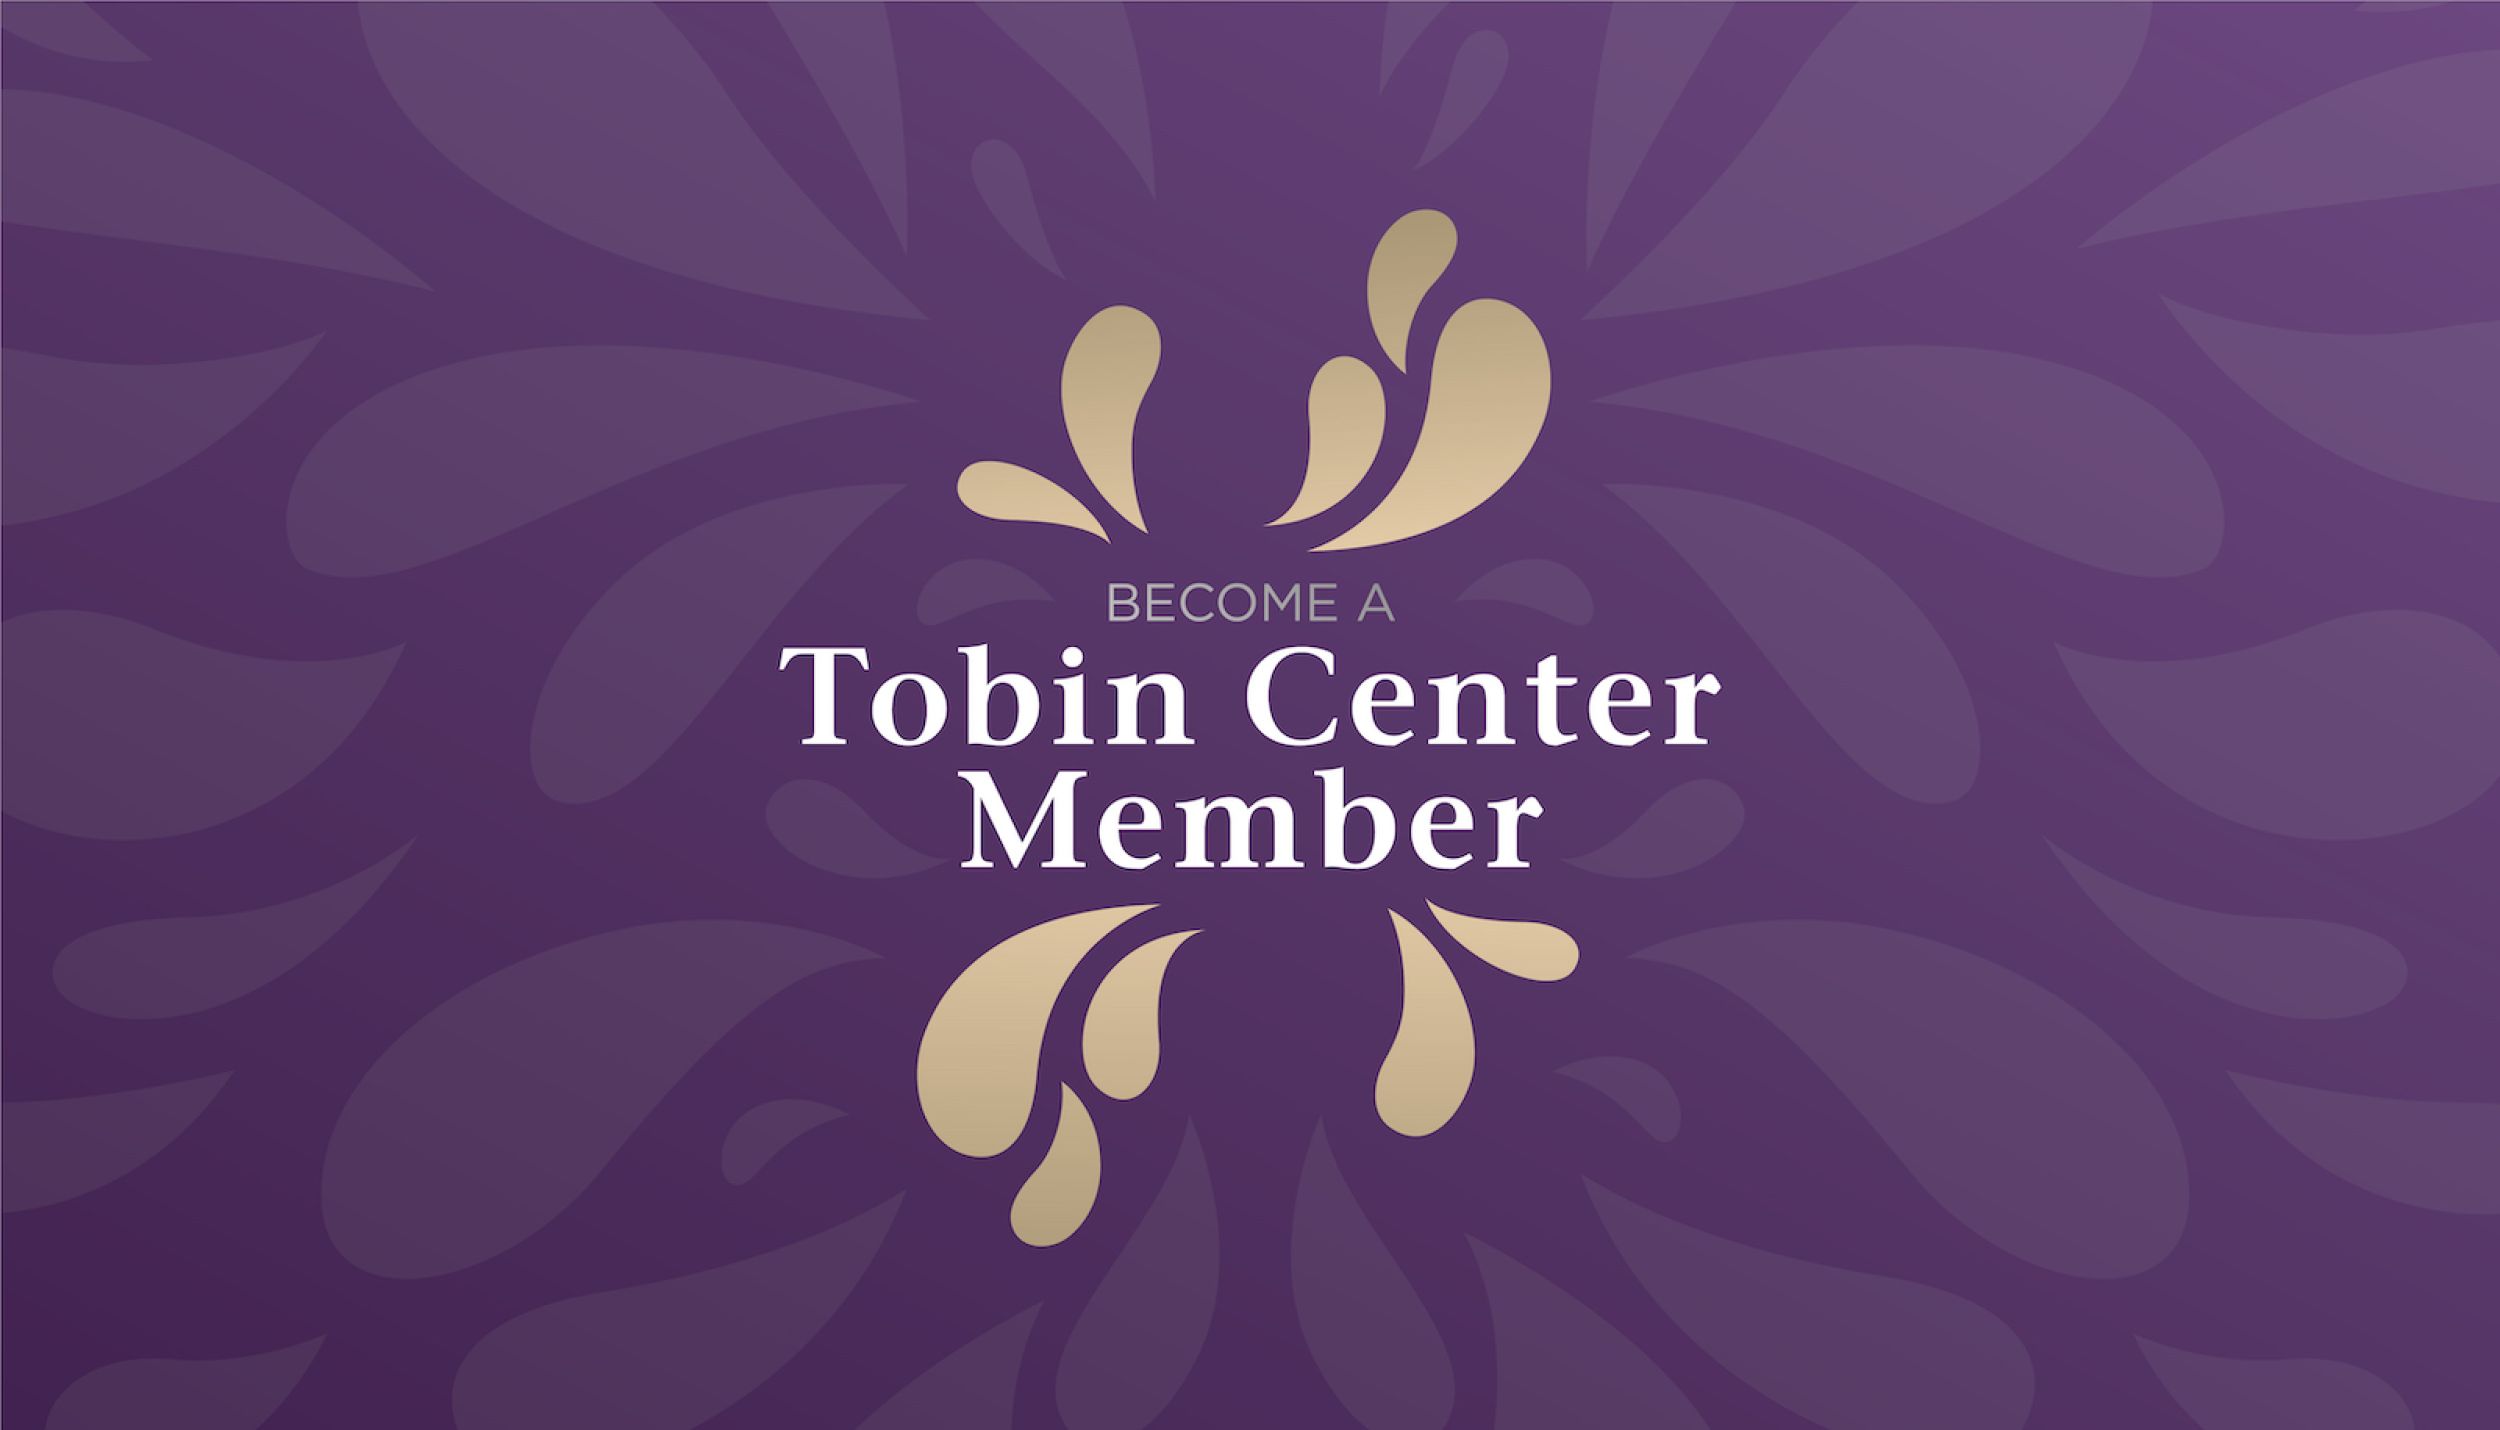 tobin_center_member_hero.jpeg